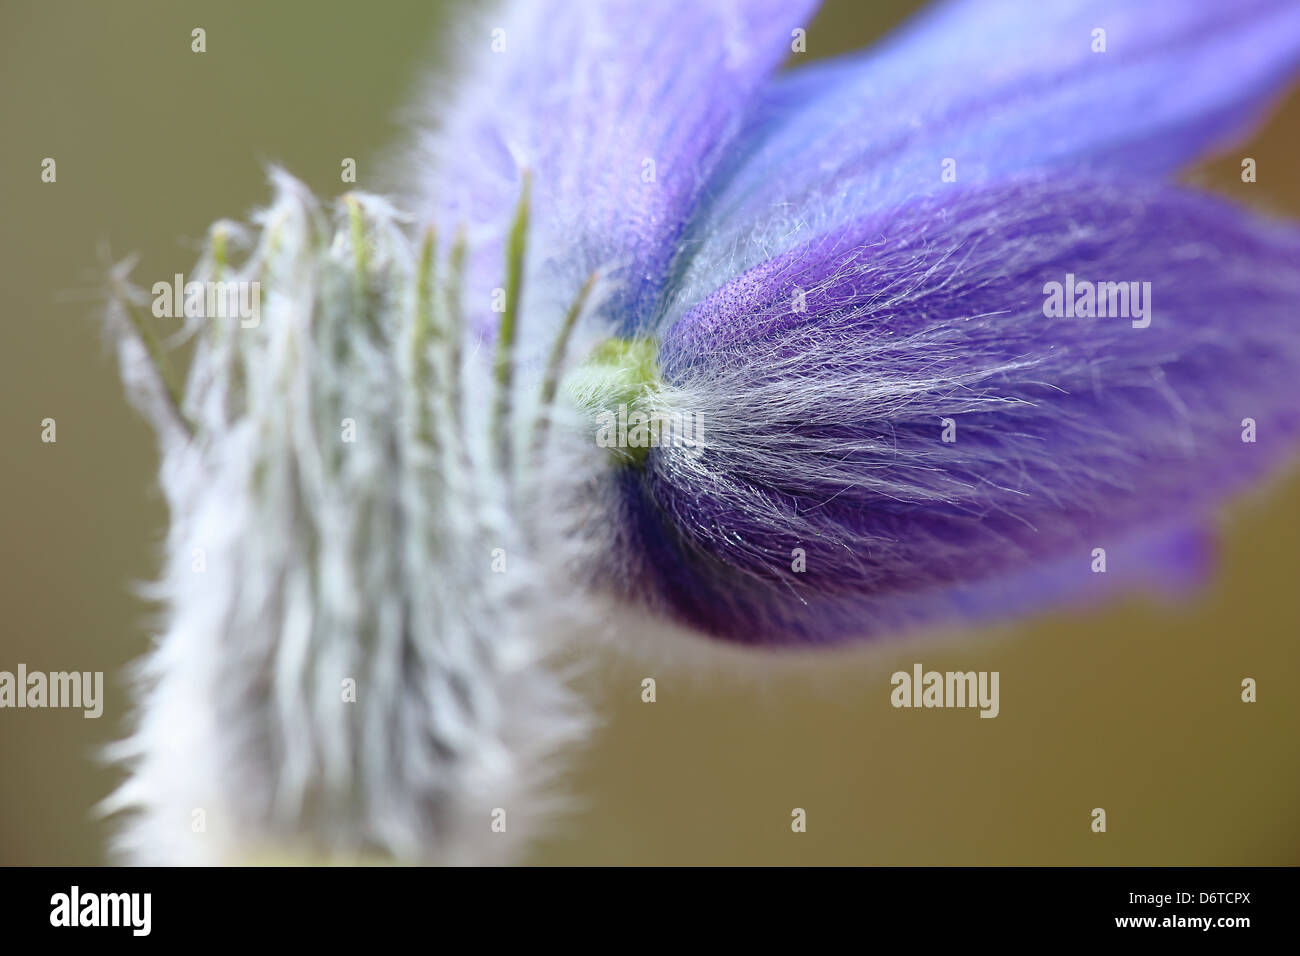 Pasque flower, pulsatilla grandis Stock Photo